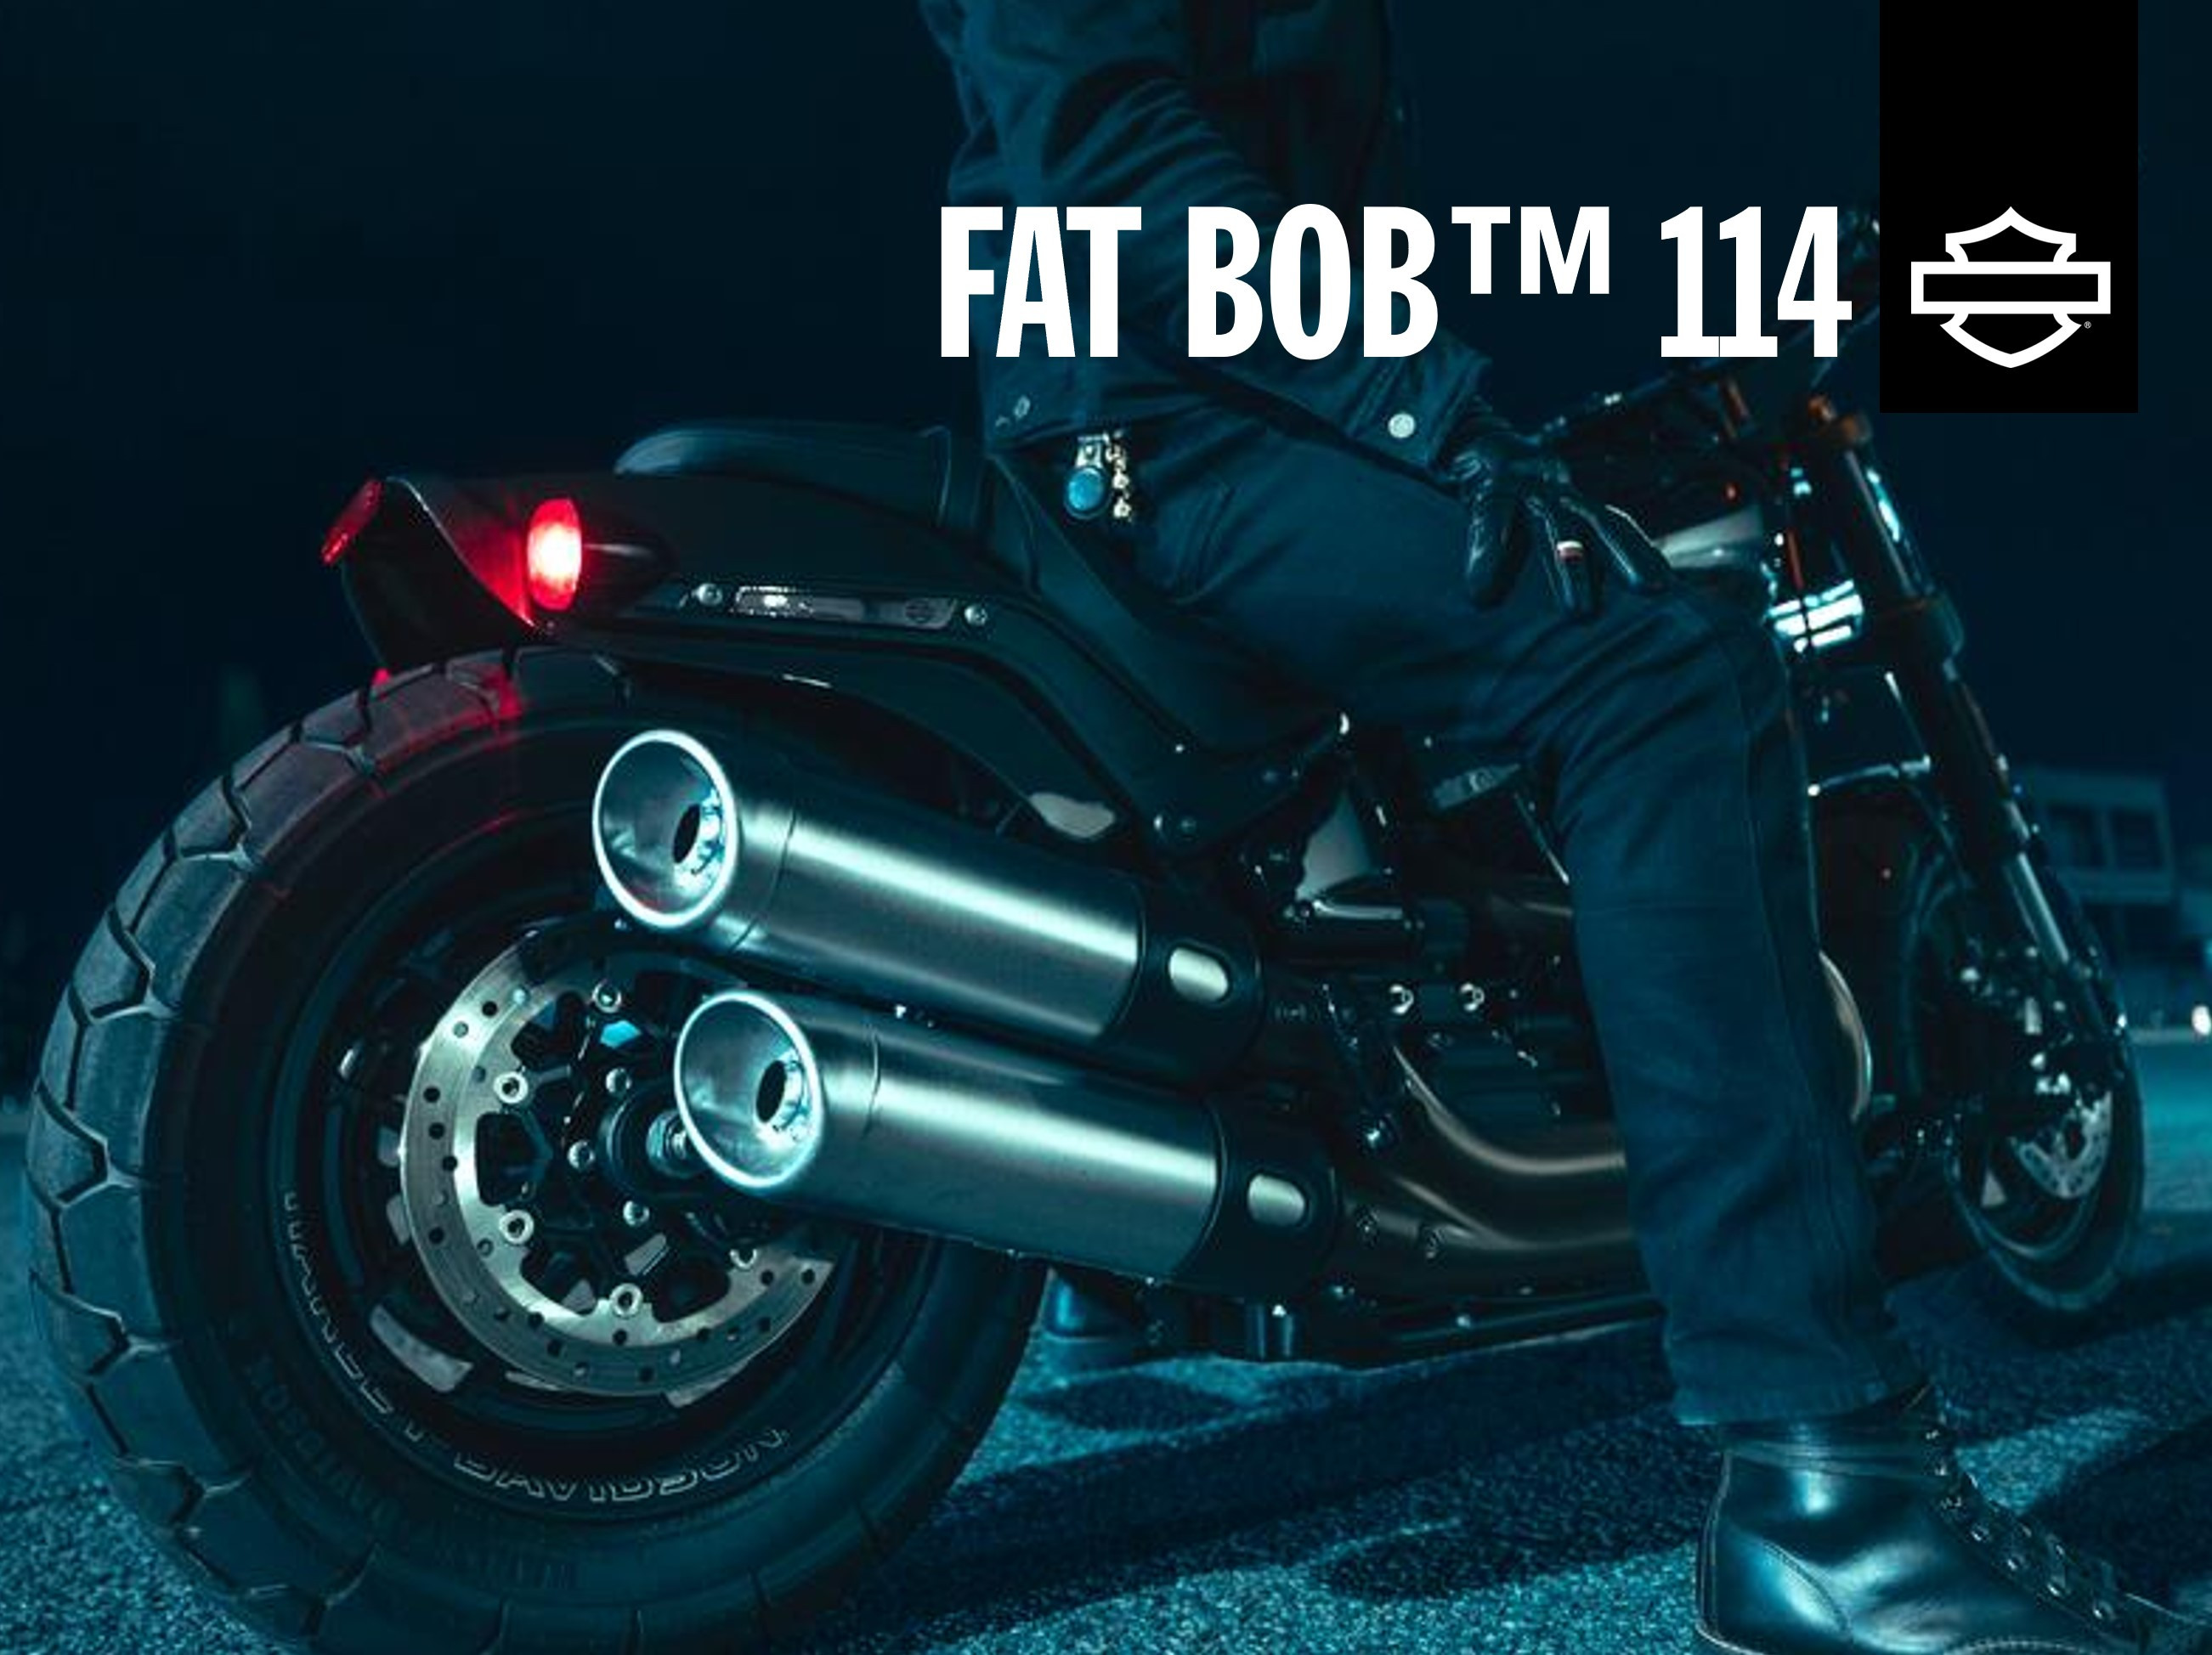 Fat Bob 114